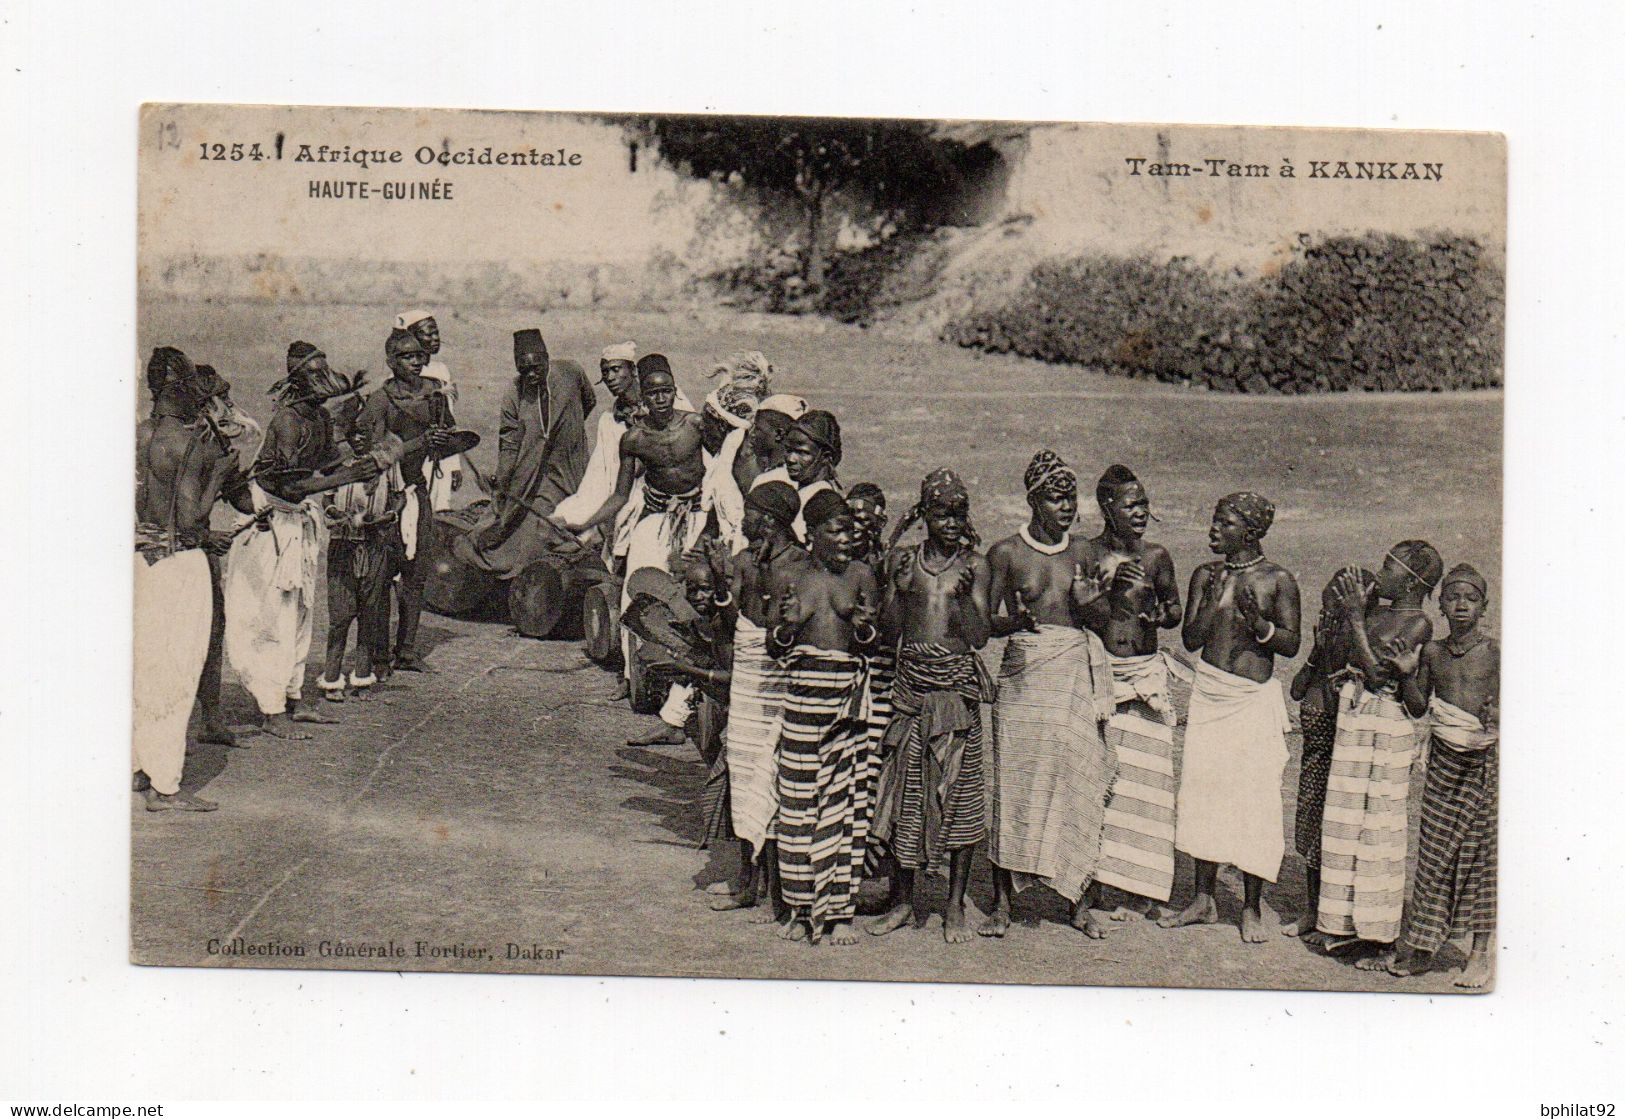 !!! GUINEE, CPA DE 1908 CACHET DE BEYDA POUR AIX LES BAINS - Covers & Documents